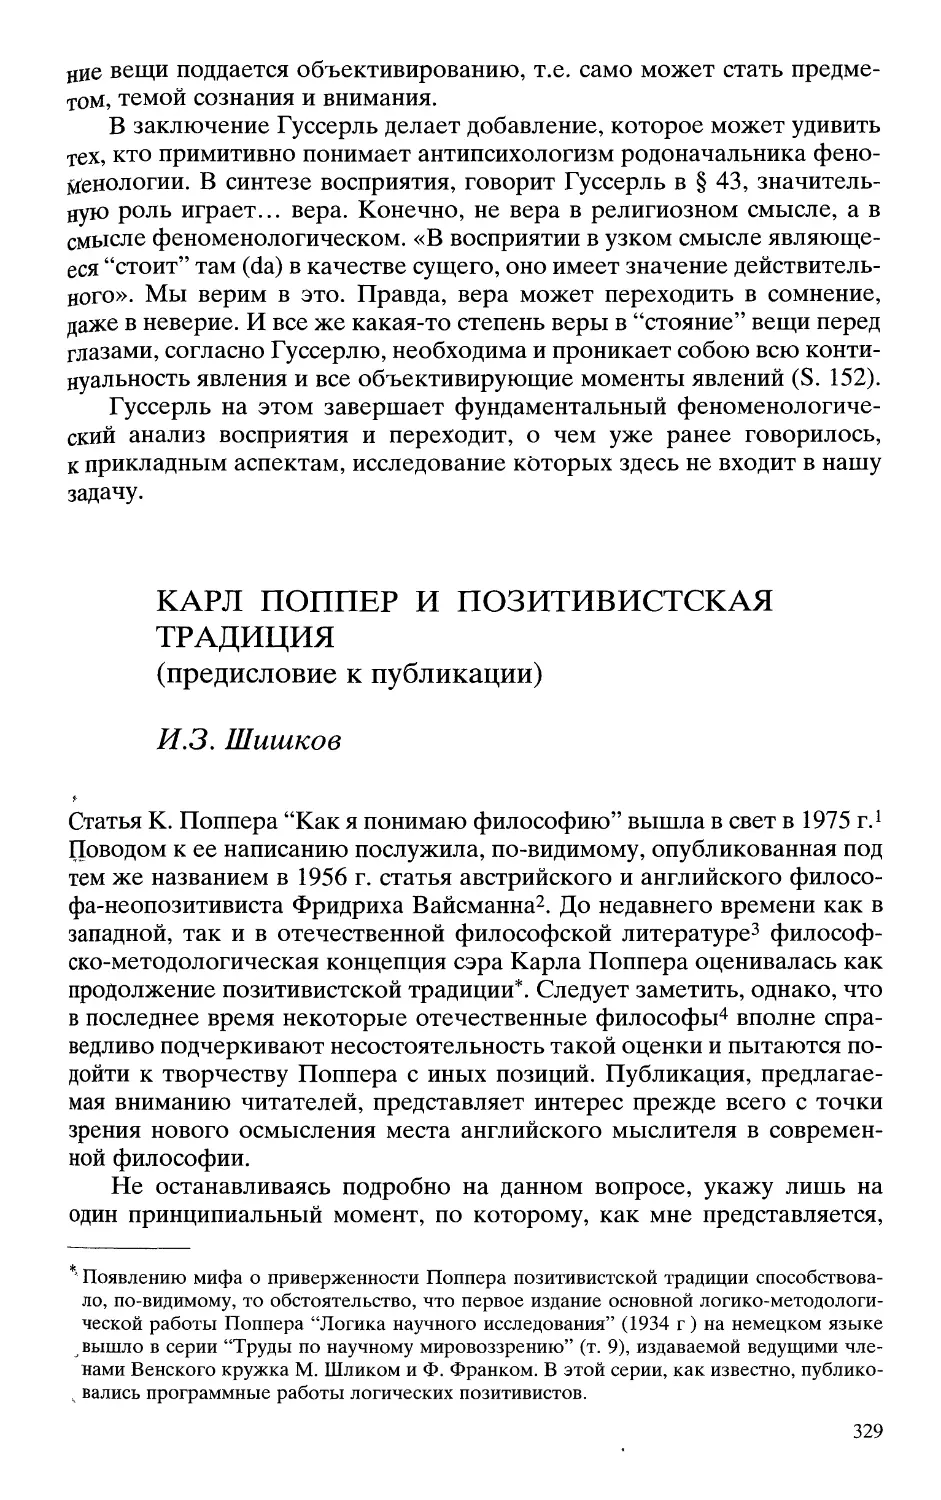 Шишков И.З. Карл Поппер и позитивистская традиция: предисловие к публикации